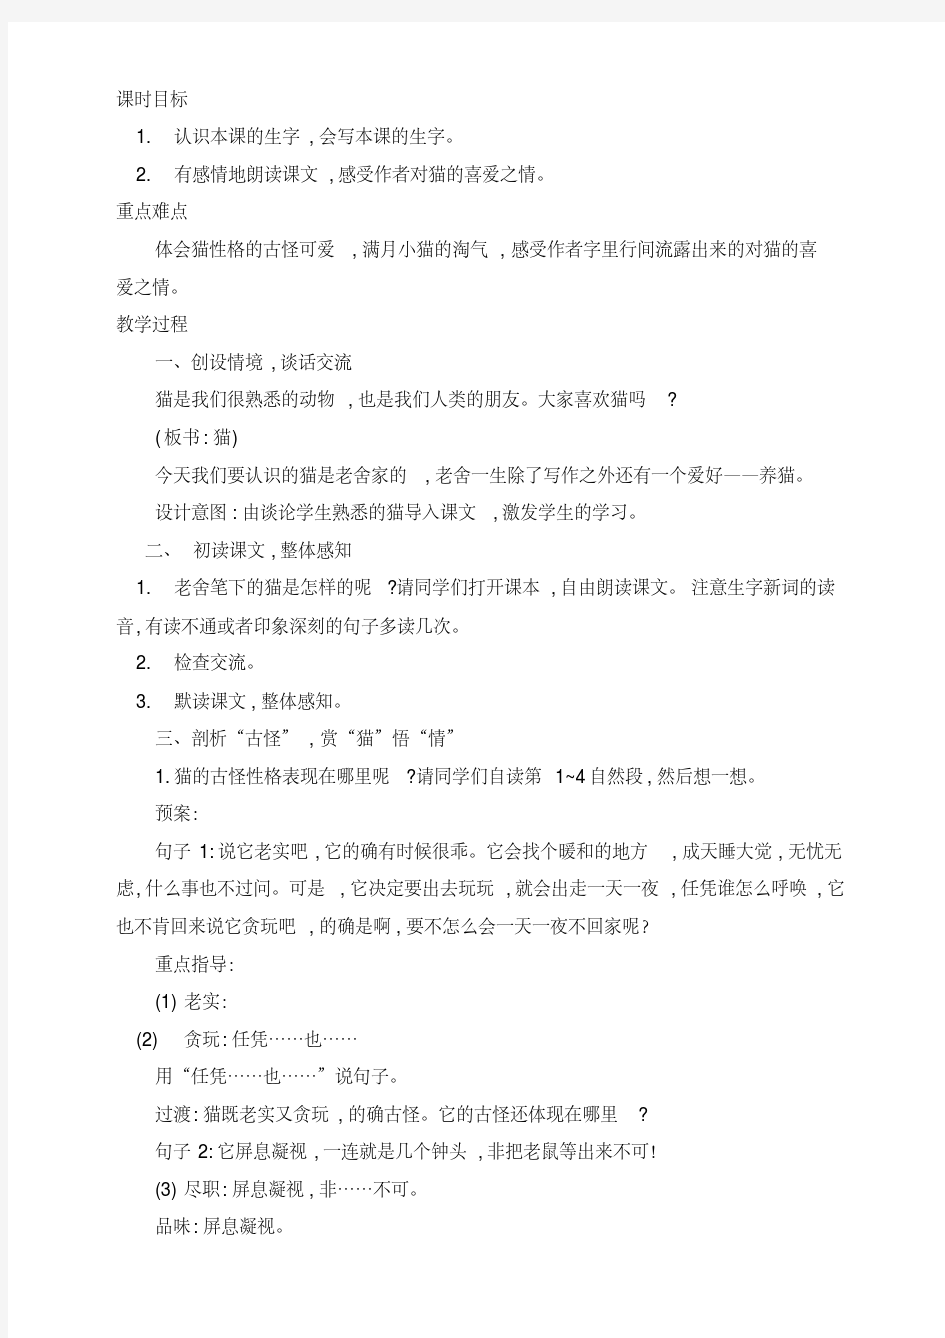 郑州实验小学四年级语文下册13.《猫》公开课教学设计(第一课时)